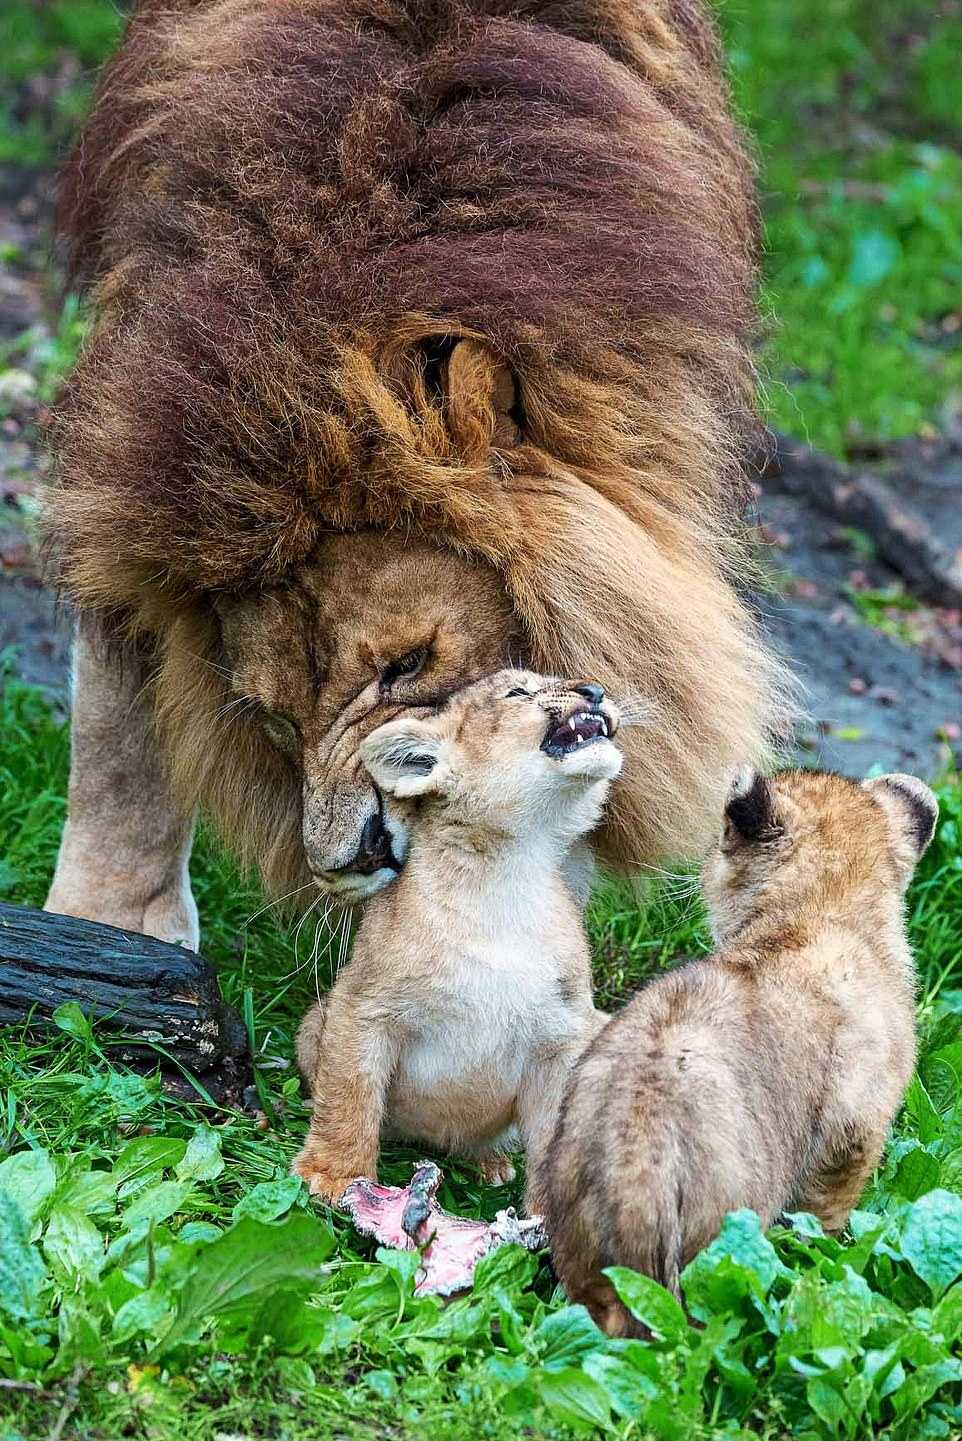 Der Löwenvater kämpft darum, sich um 5 widerspenstige Jungen zu kümmern, während sich ihre Mutter davon erholt, von einer anderen Löwin angegriffen zu werden